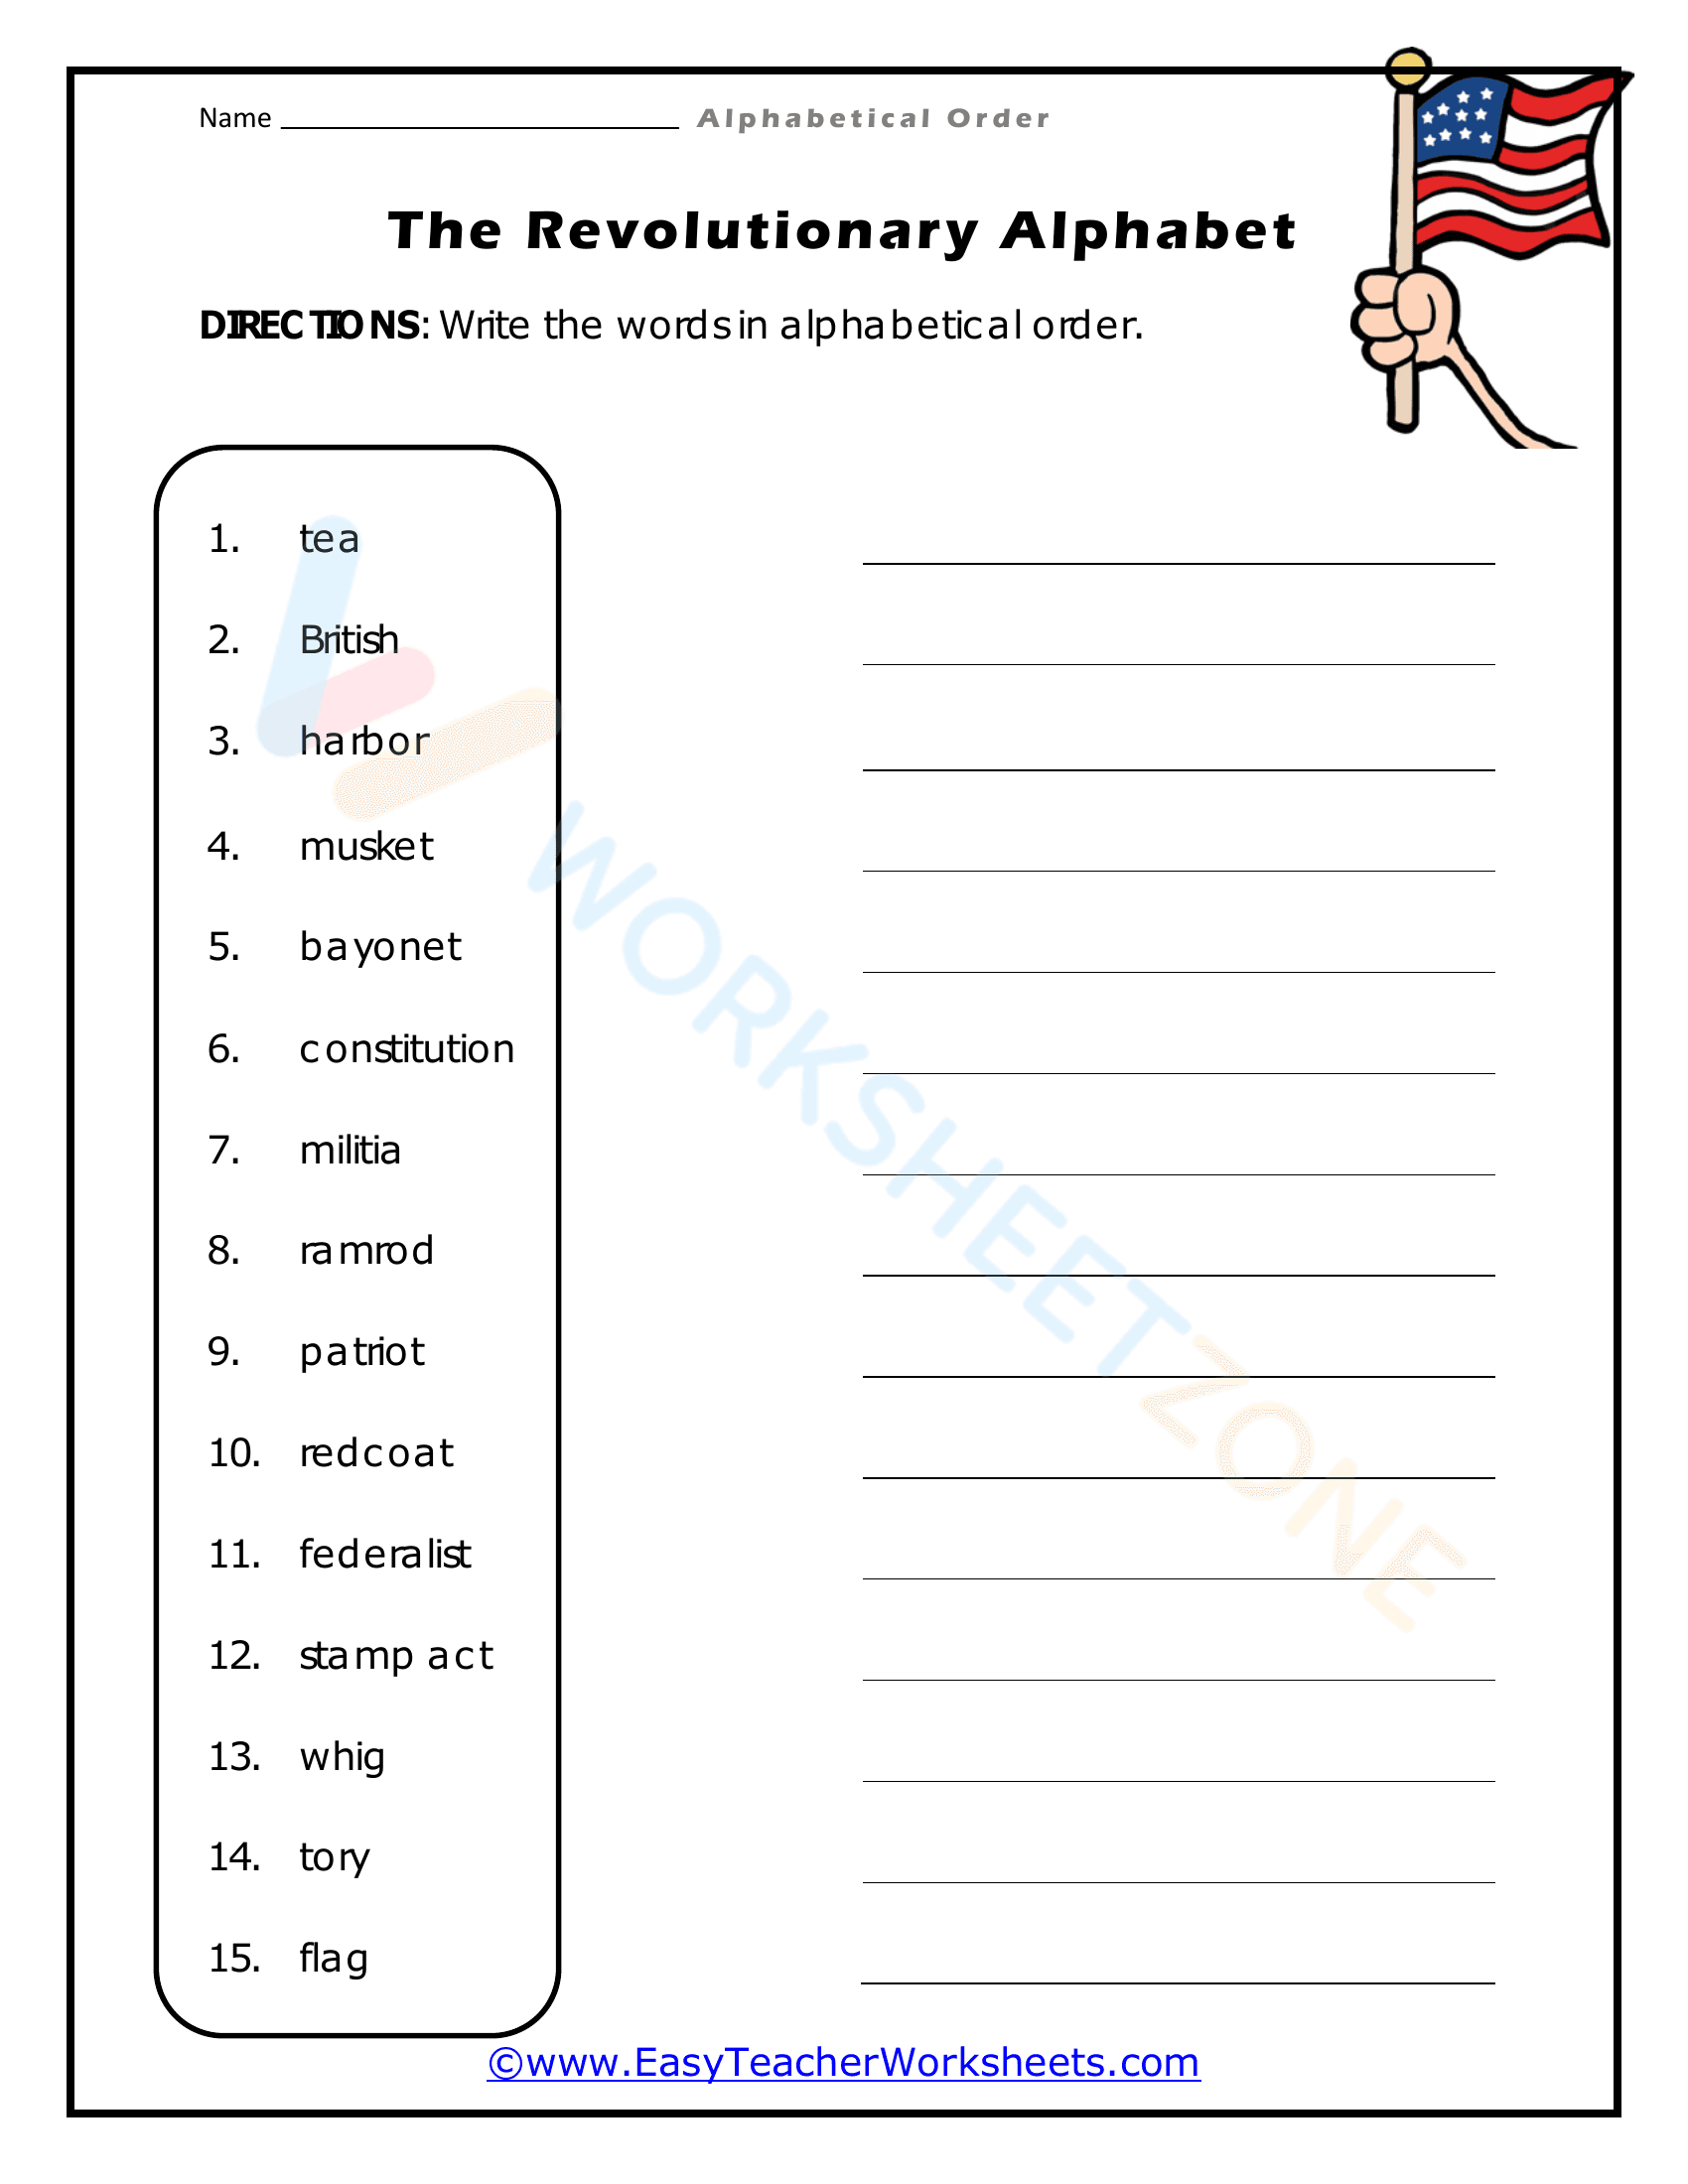 alphabetical order worksheets 7